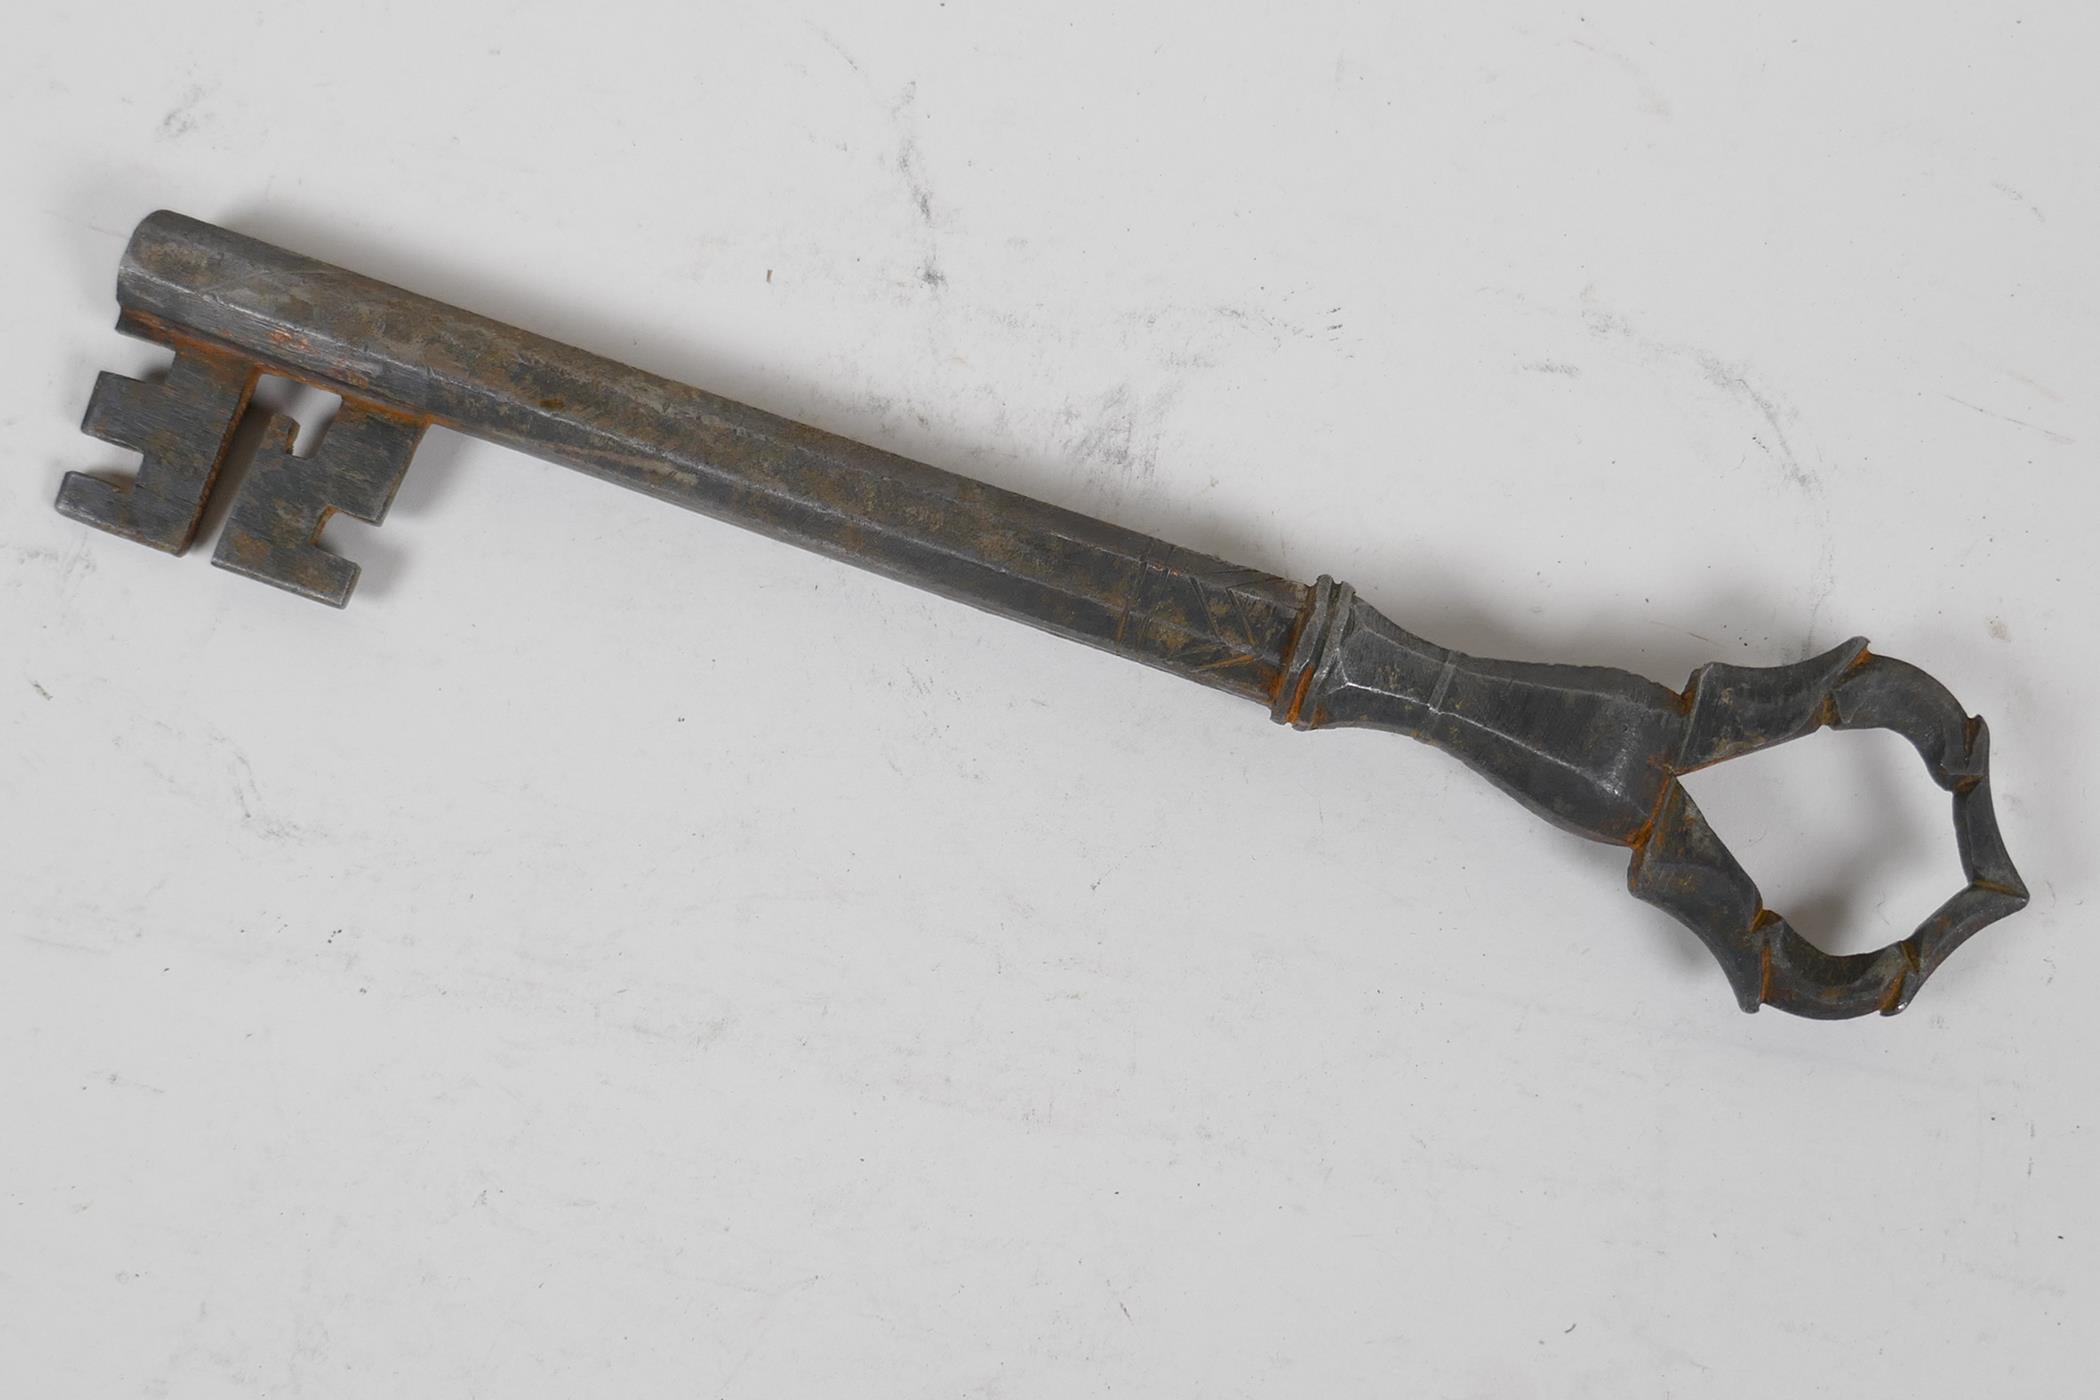 An antique Persian metal key made from a gun barrel, 9" long